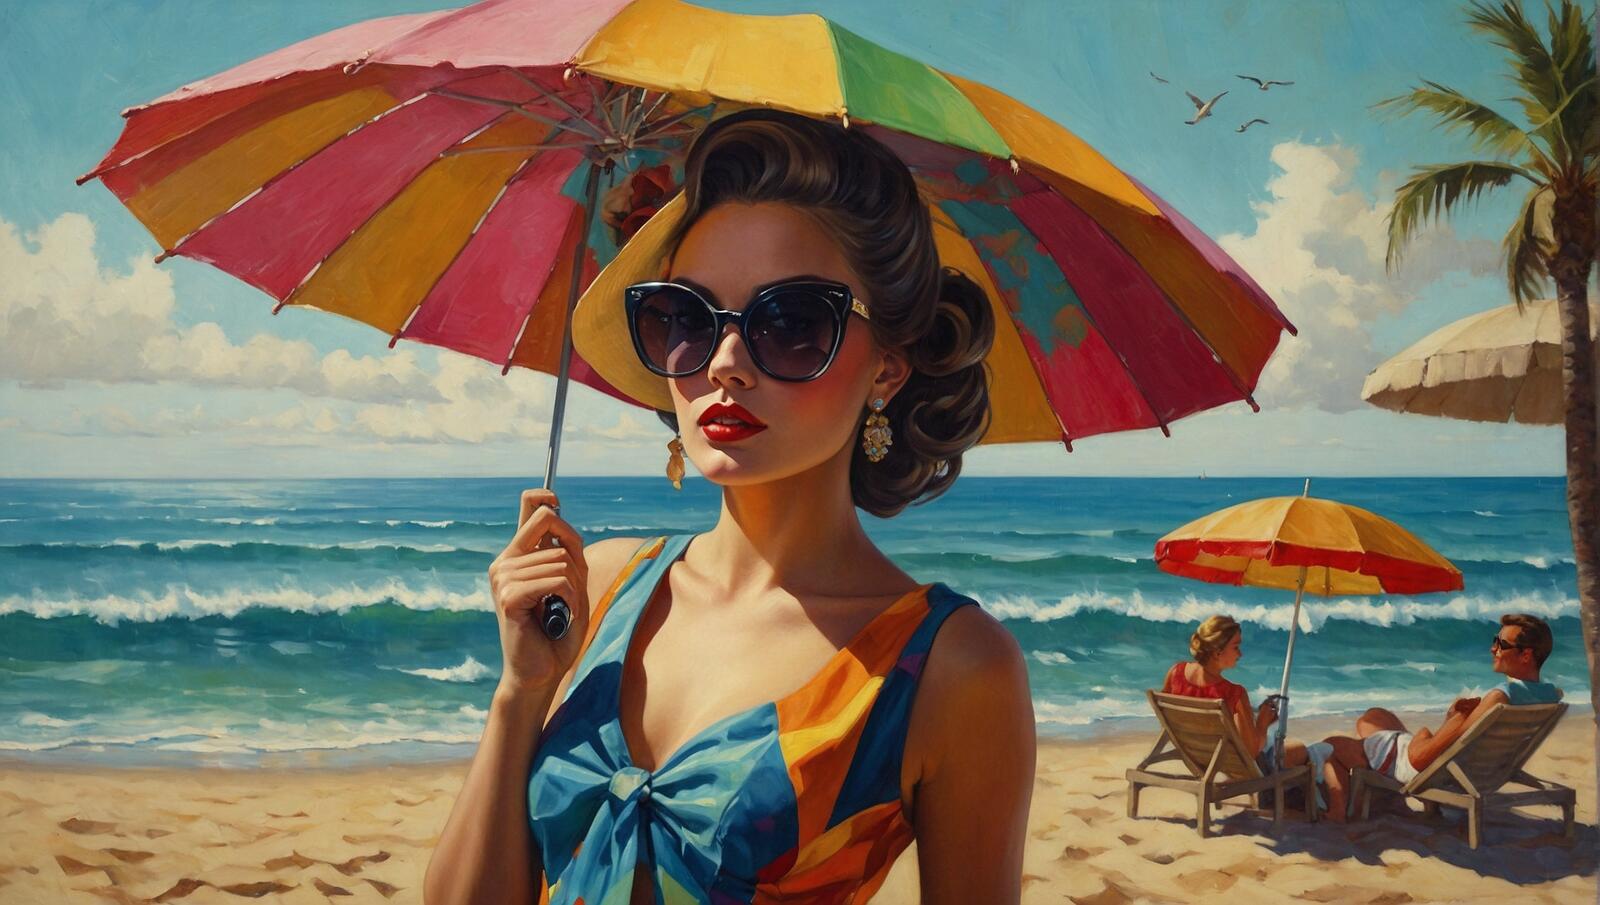 Бесплатное фото Женщина с открытым зонтом от солнца на пляже с людьми